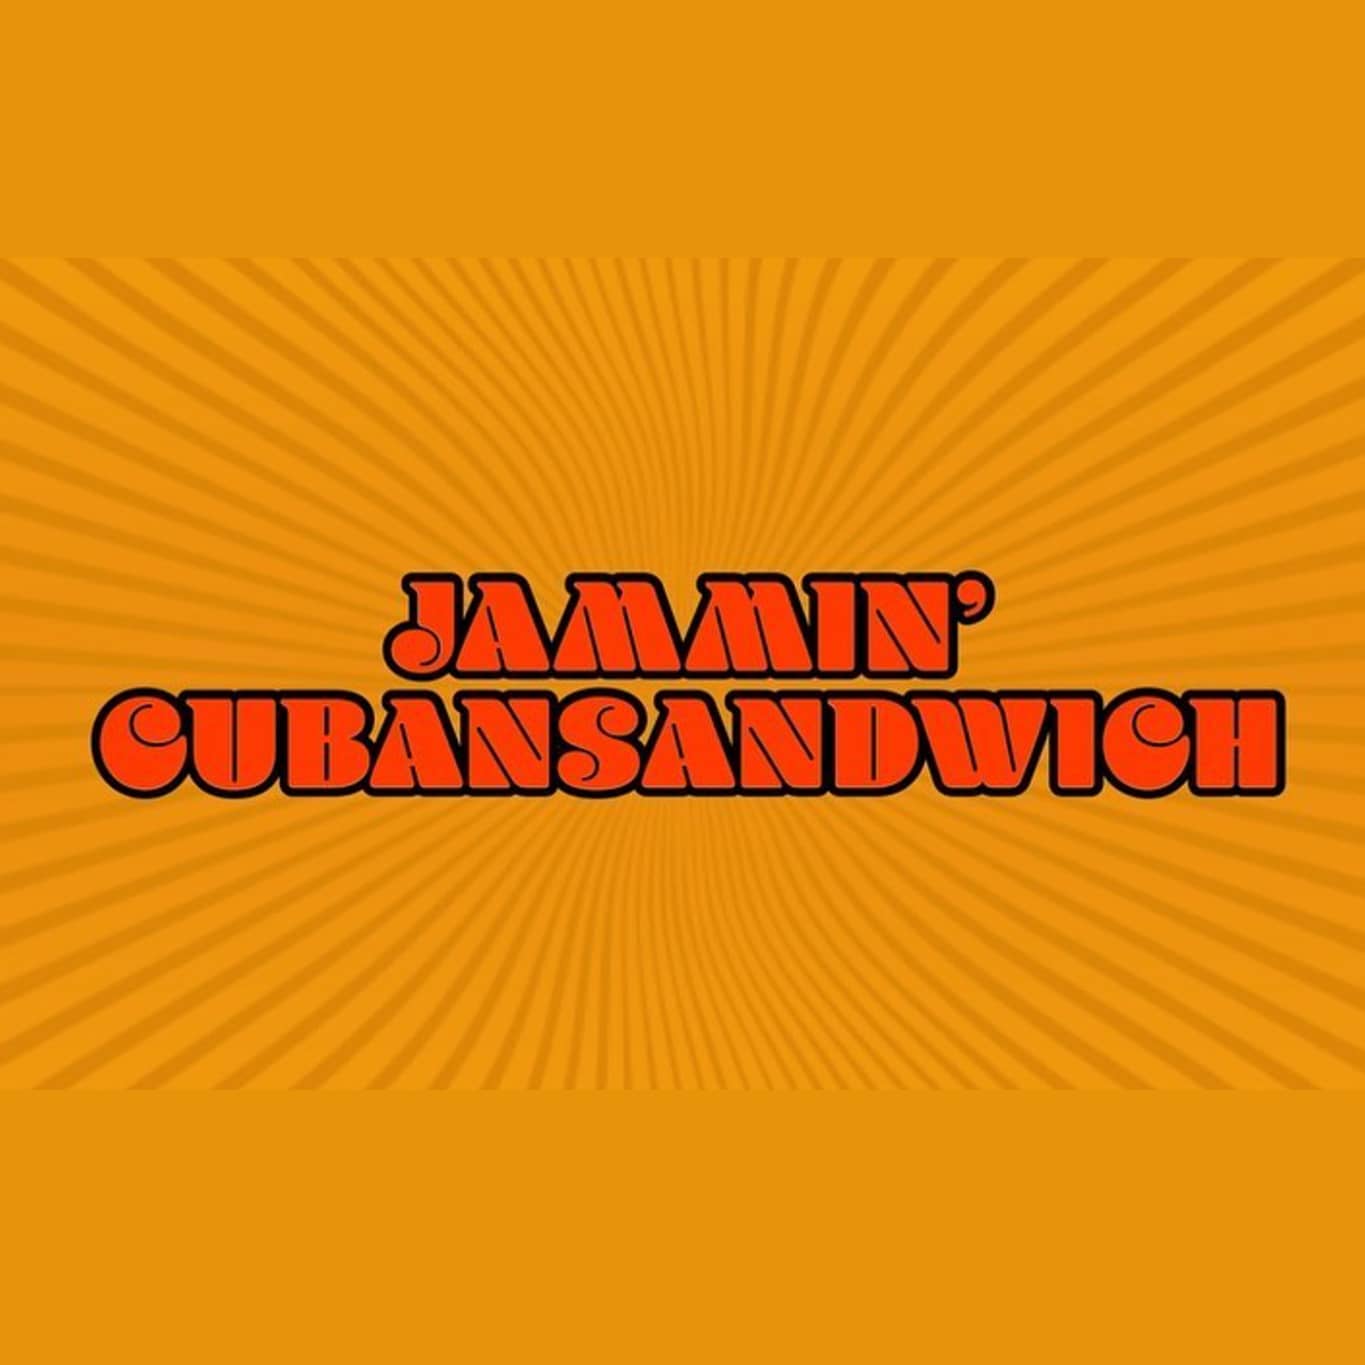 JAMMIN' cubansandwich